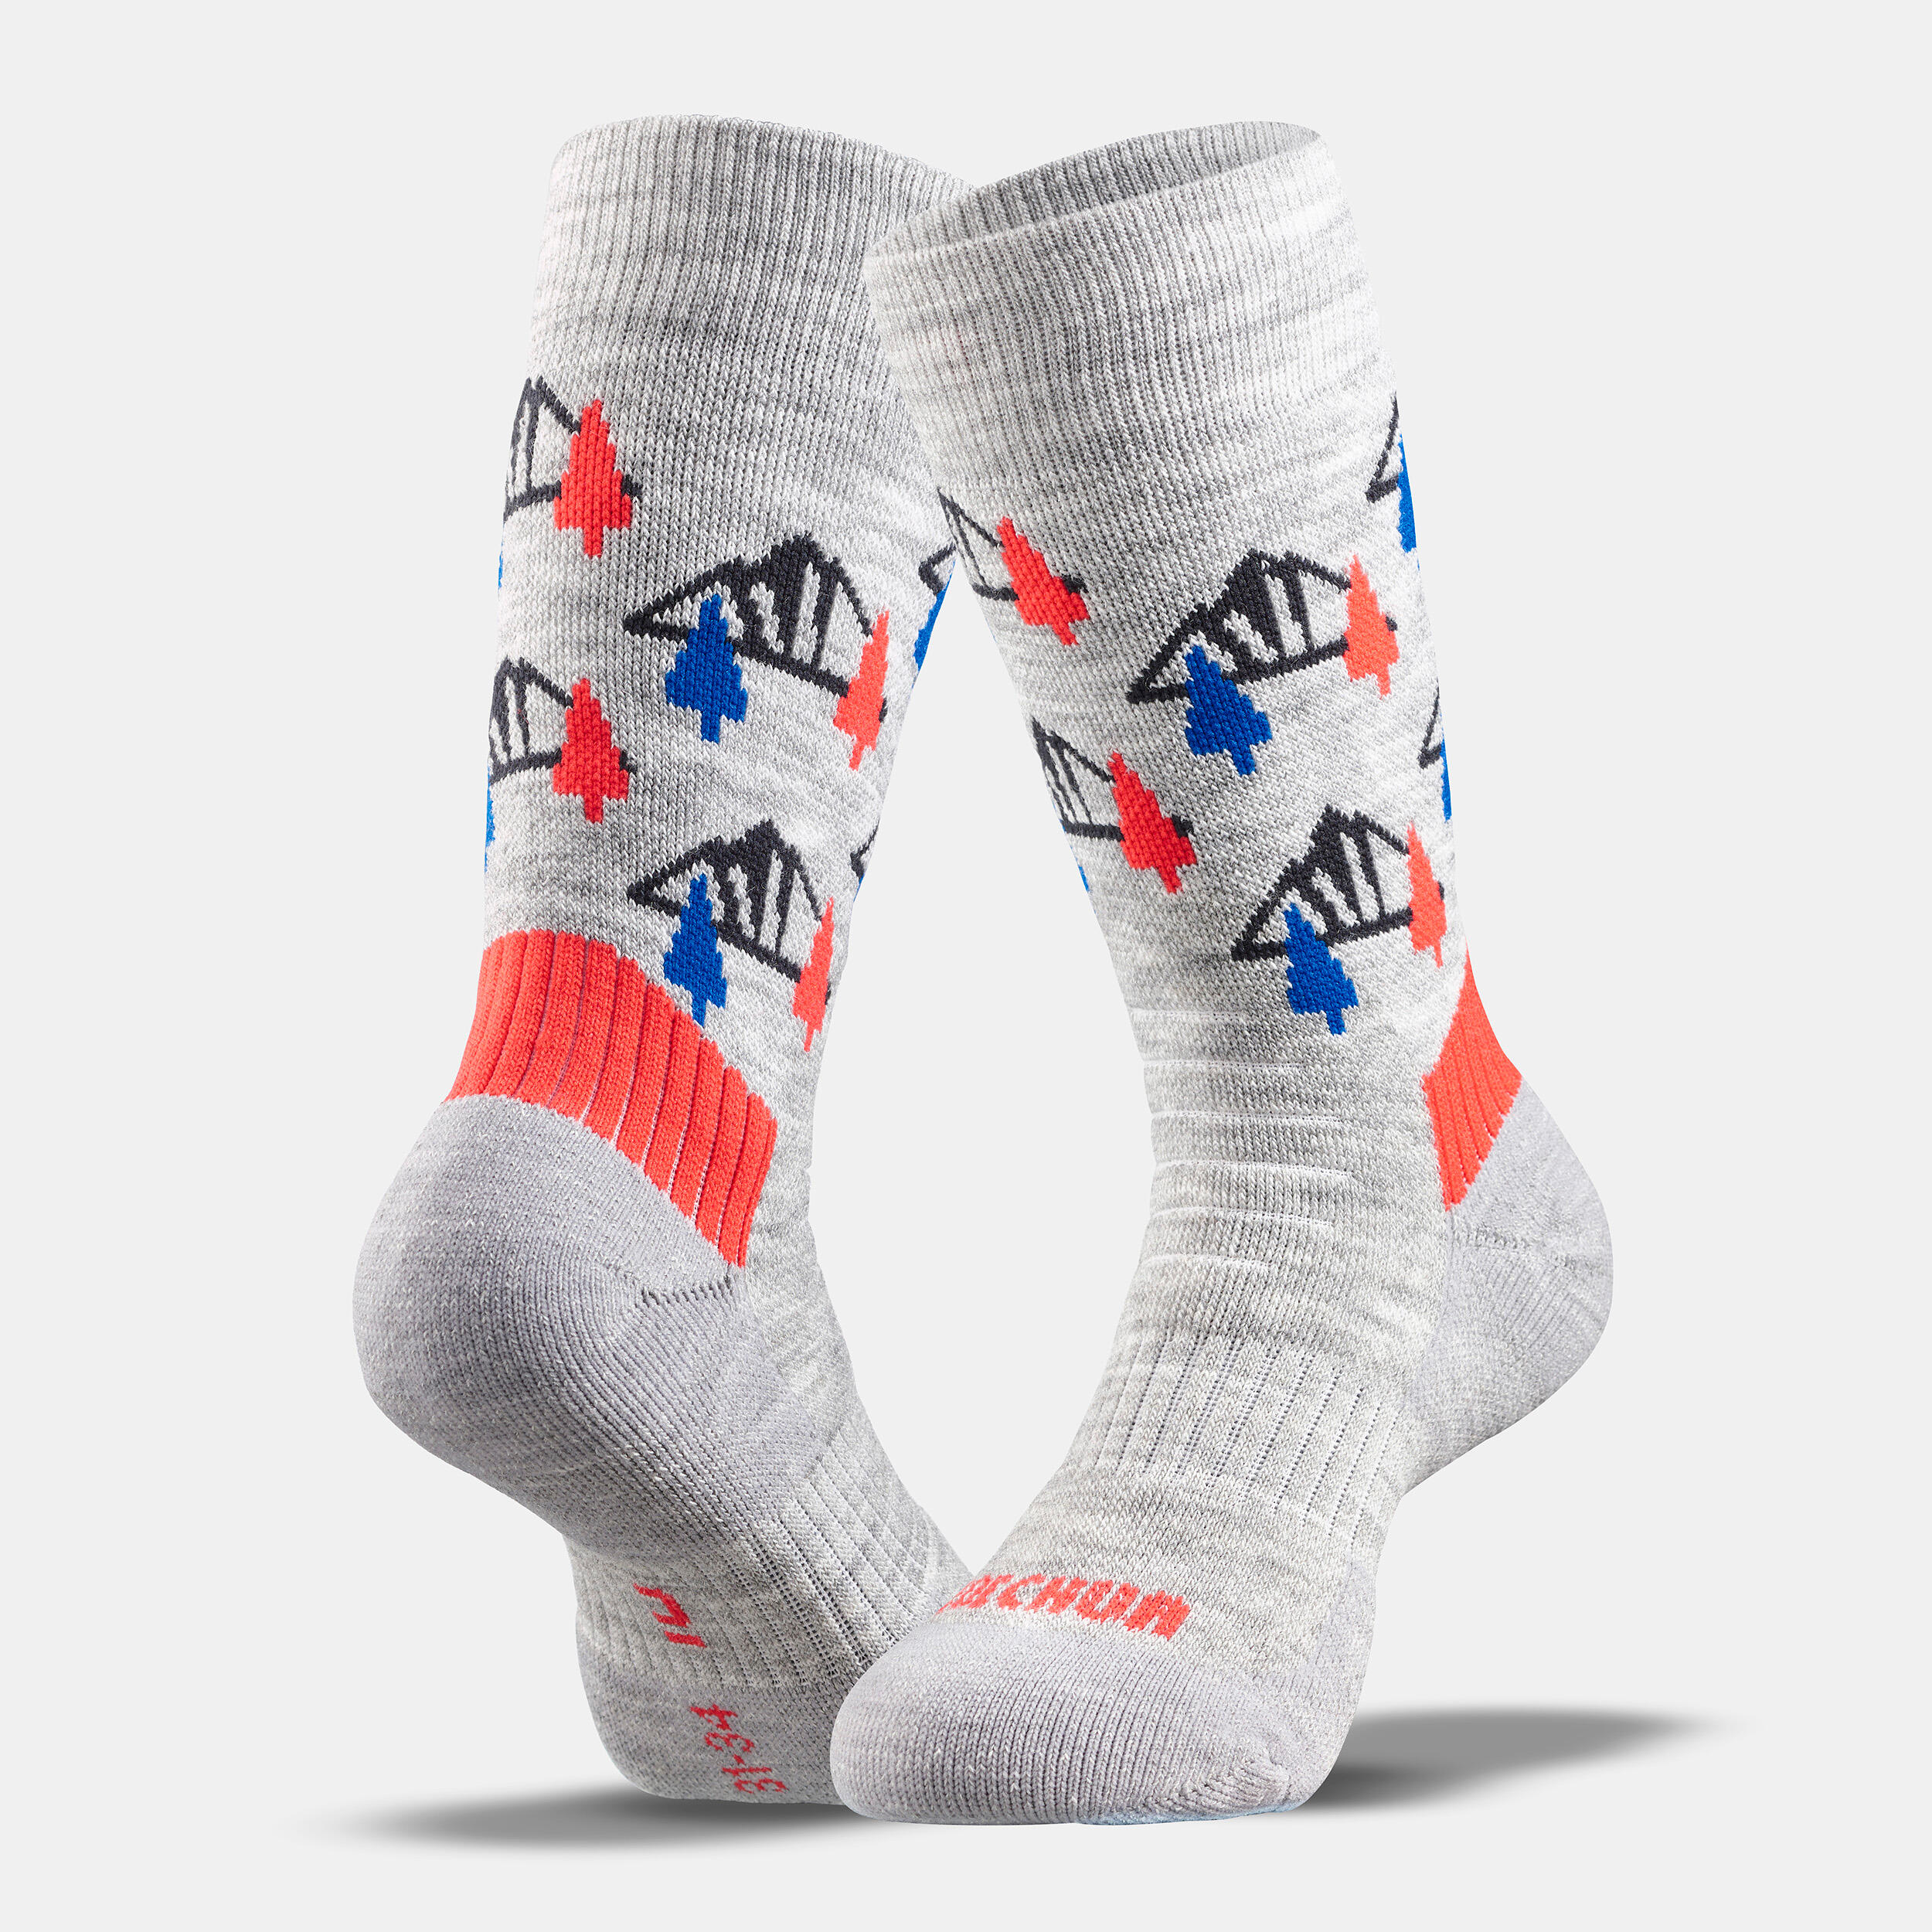 Kids’ Warm Hiking Socks SH100 Mid 2 Pairs 2/9